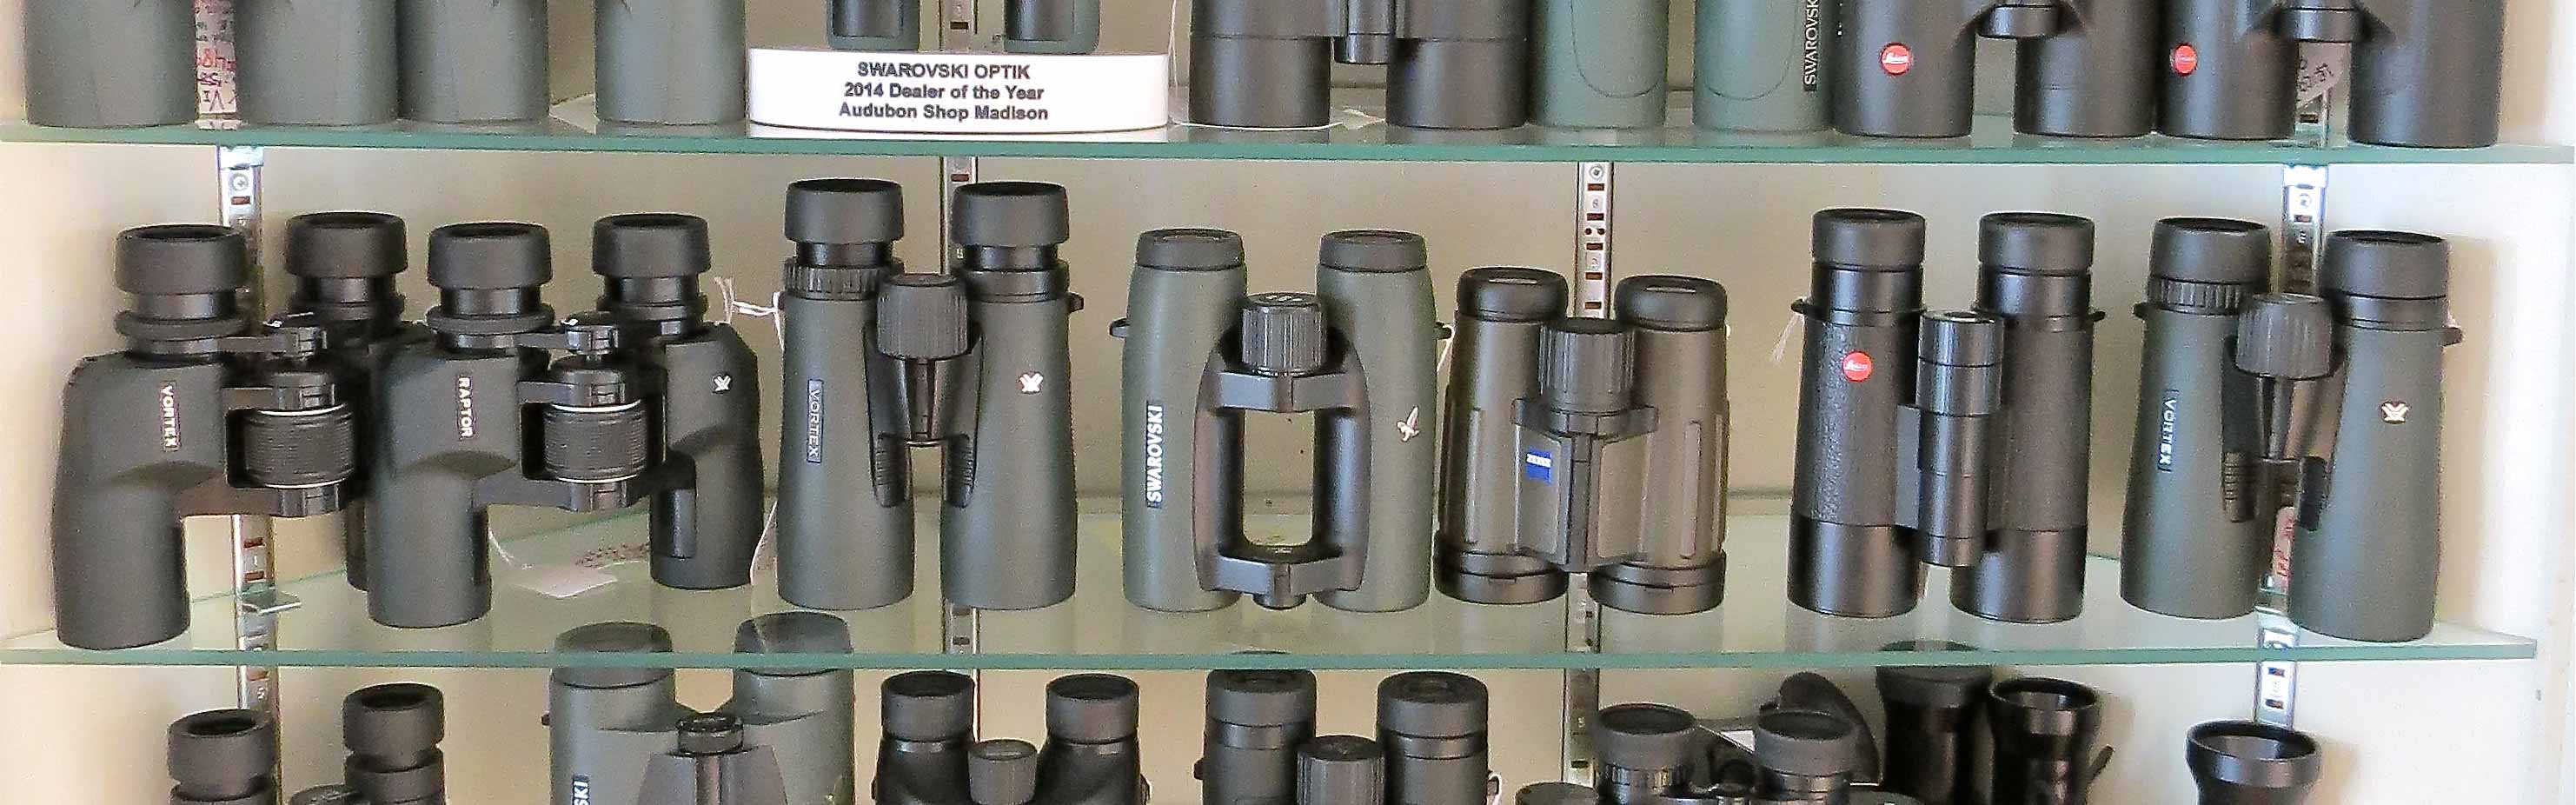 IMG_7292-binoculars